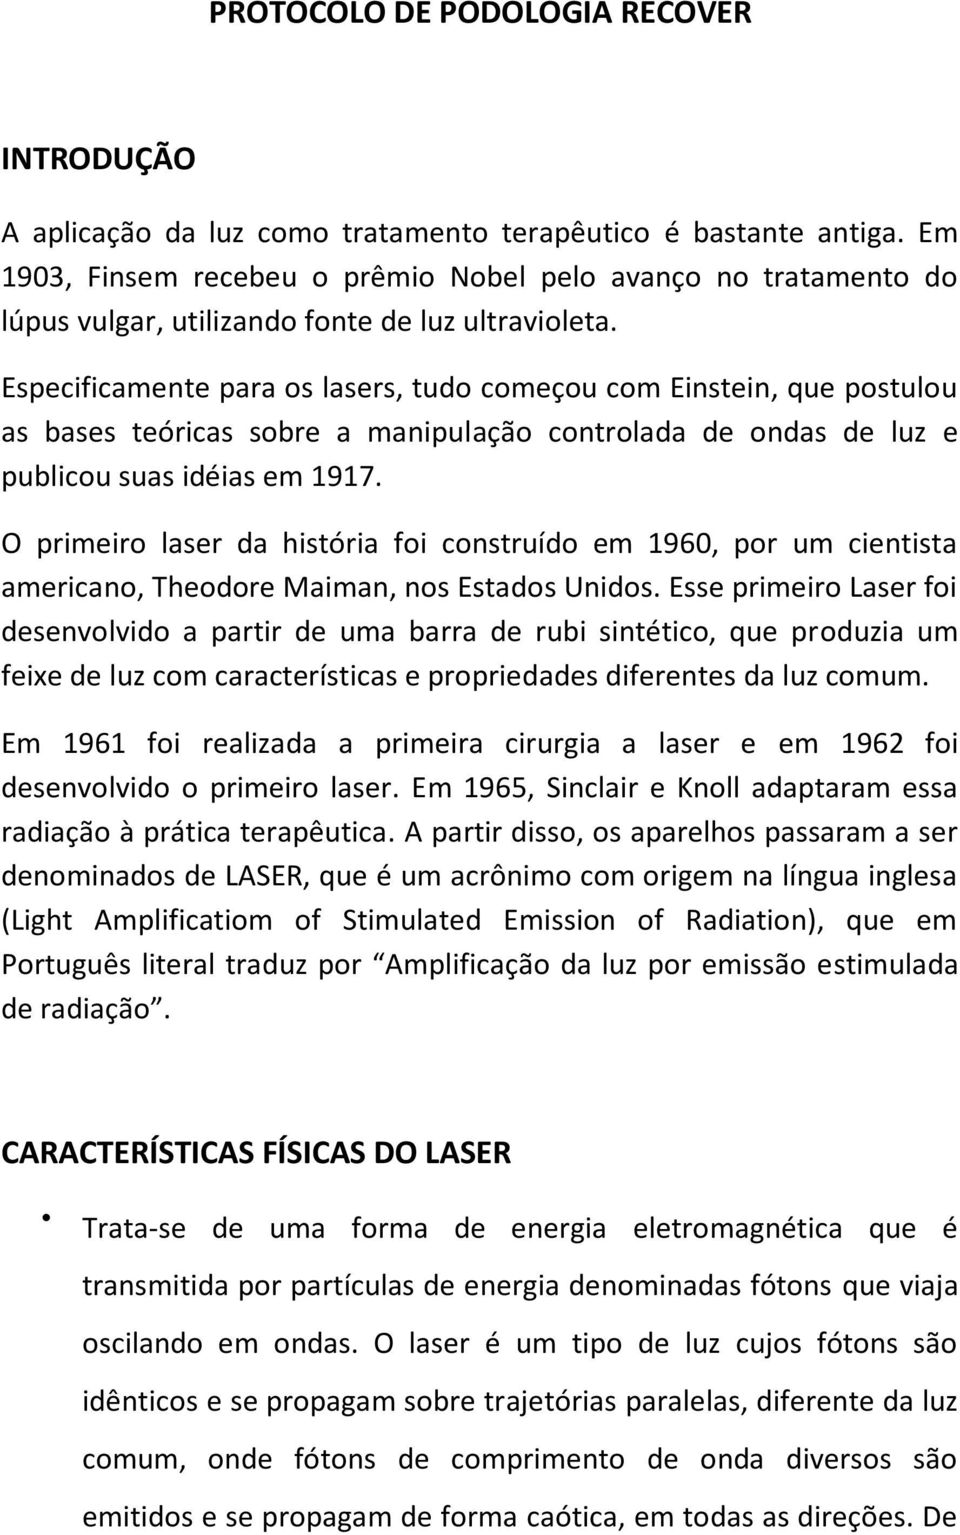 Especificamente para os lasers, tudo começou com Einstein, que postulou as bases teóricas sobre a manipulação controlada de ondas de luz e publicou suas idéias em 1917.